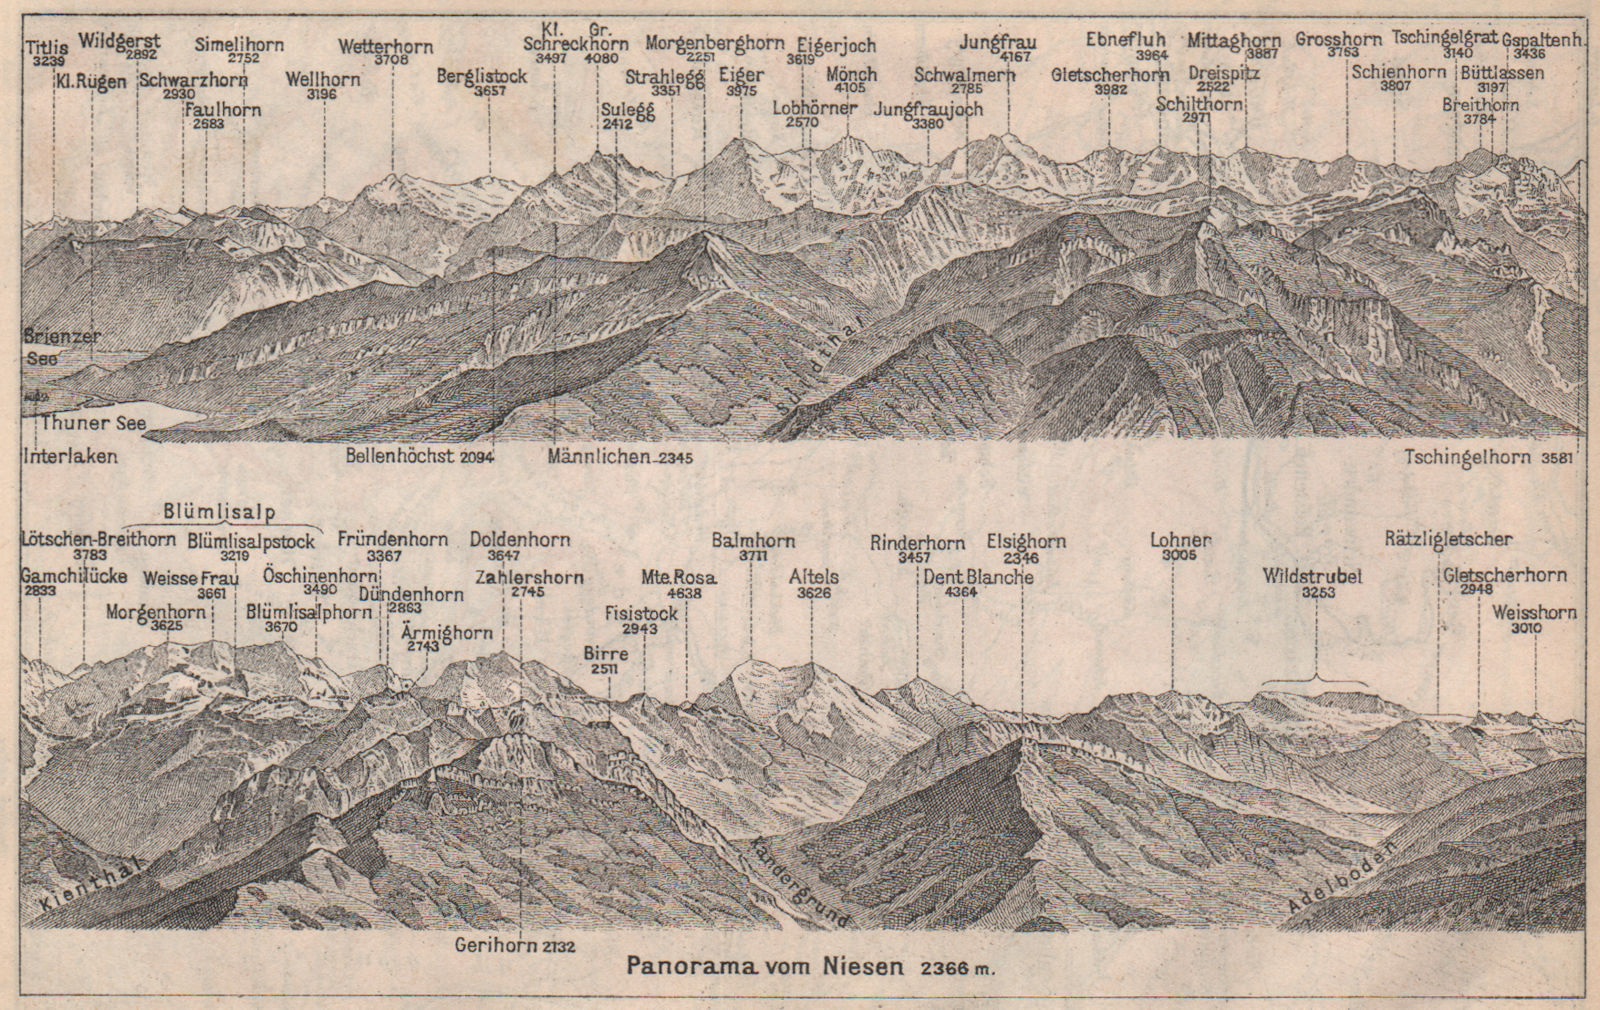 PANORAMA from/von NIESEN 2366m. Blumisalp Jungfrau Switzerland Schweiz 1897 map